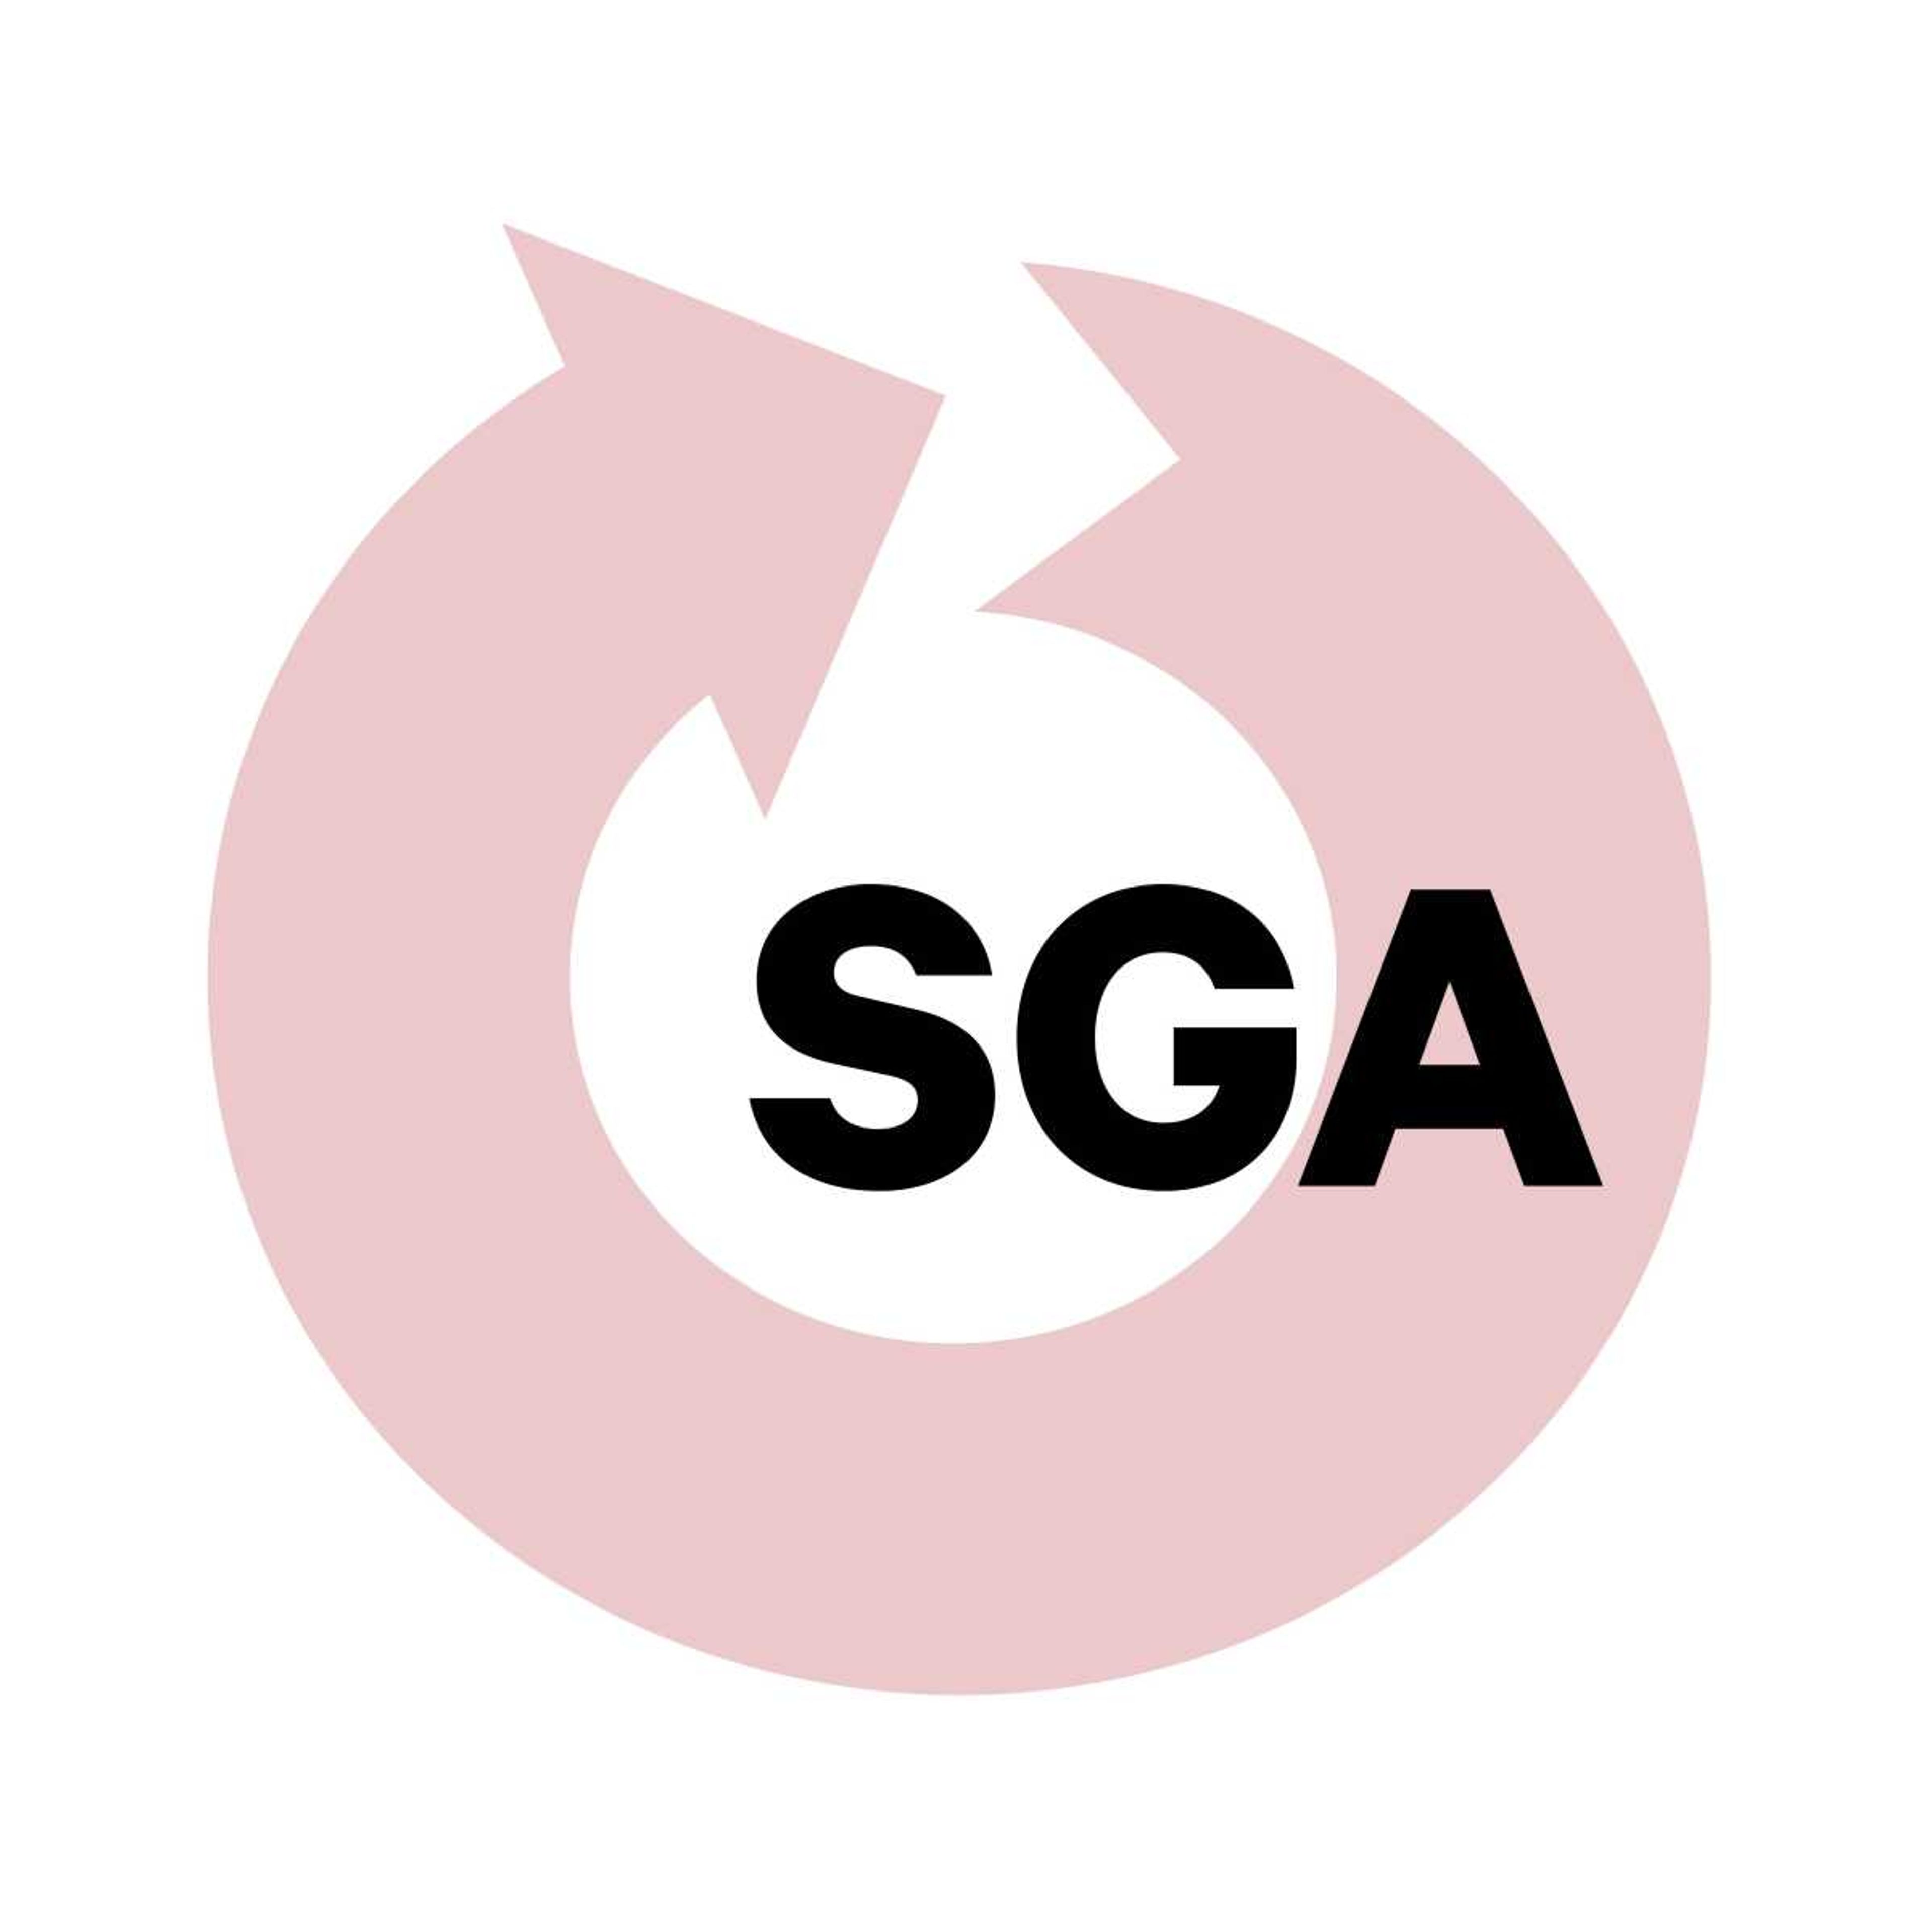 SGA approves new senators to fill vacancies